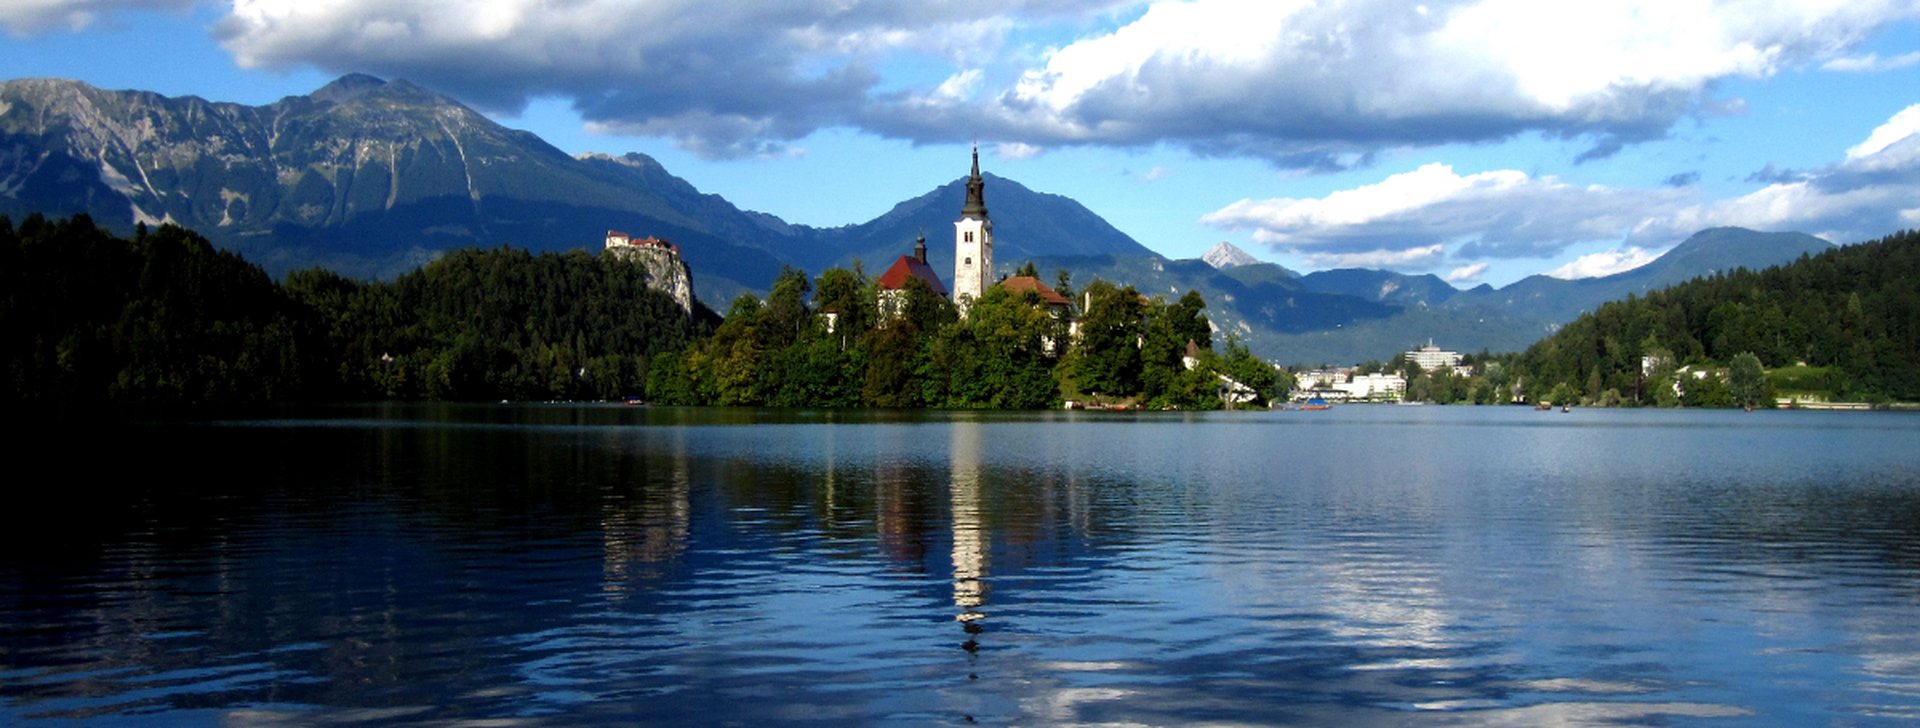 Reiseziele Slowenien